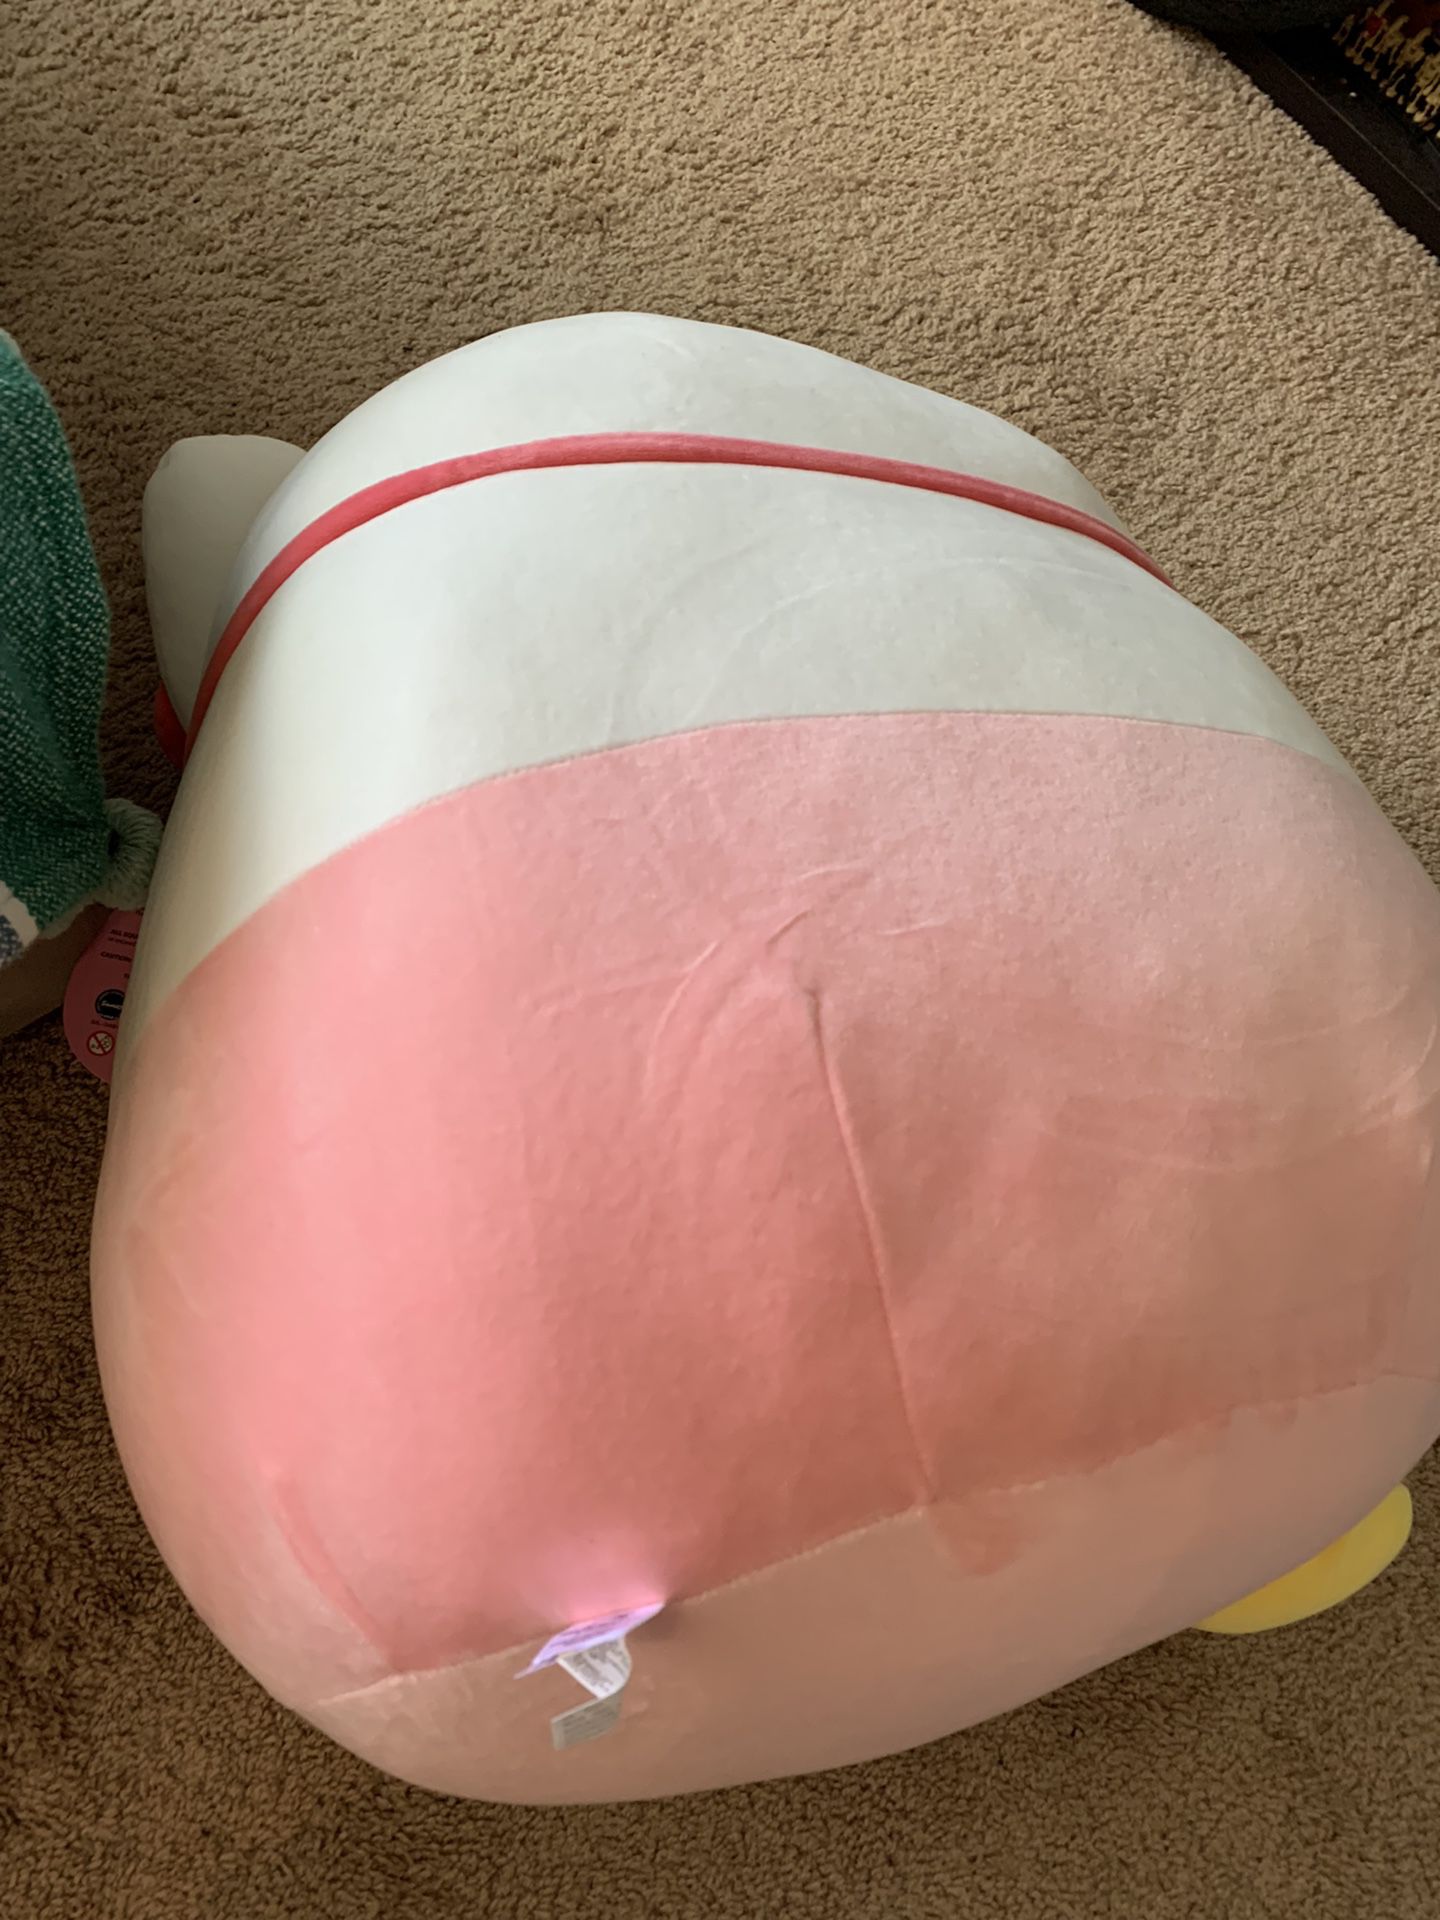 Squishmallow Giant Hello Kitty Stuffed Plush Pillow Sanrio 